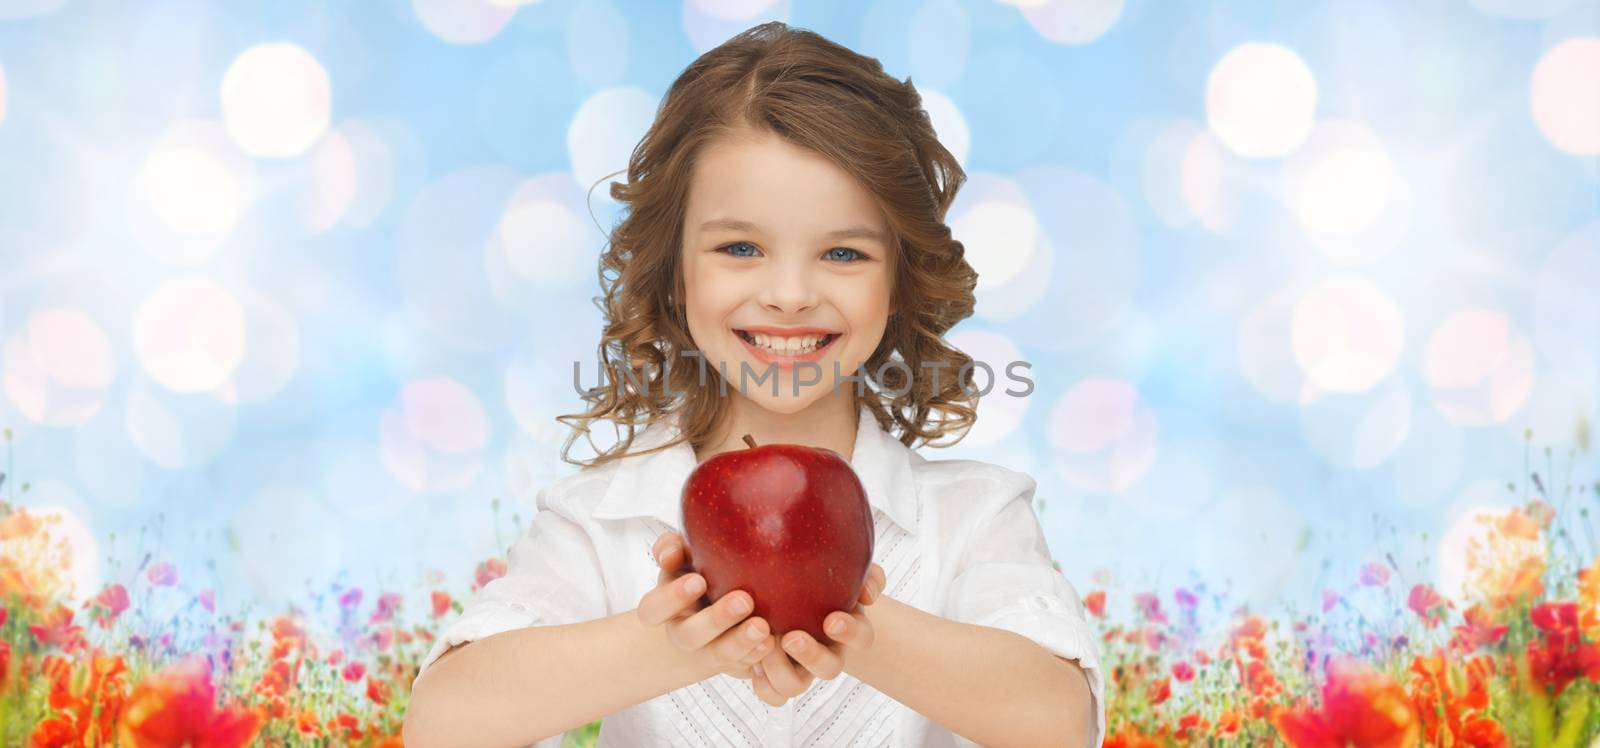 happy girl holding apple over garden background by dolgachov